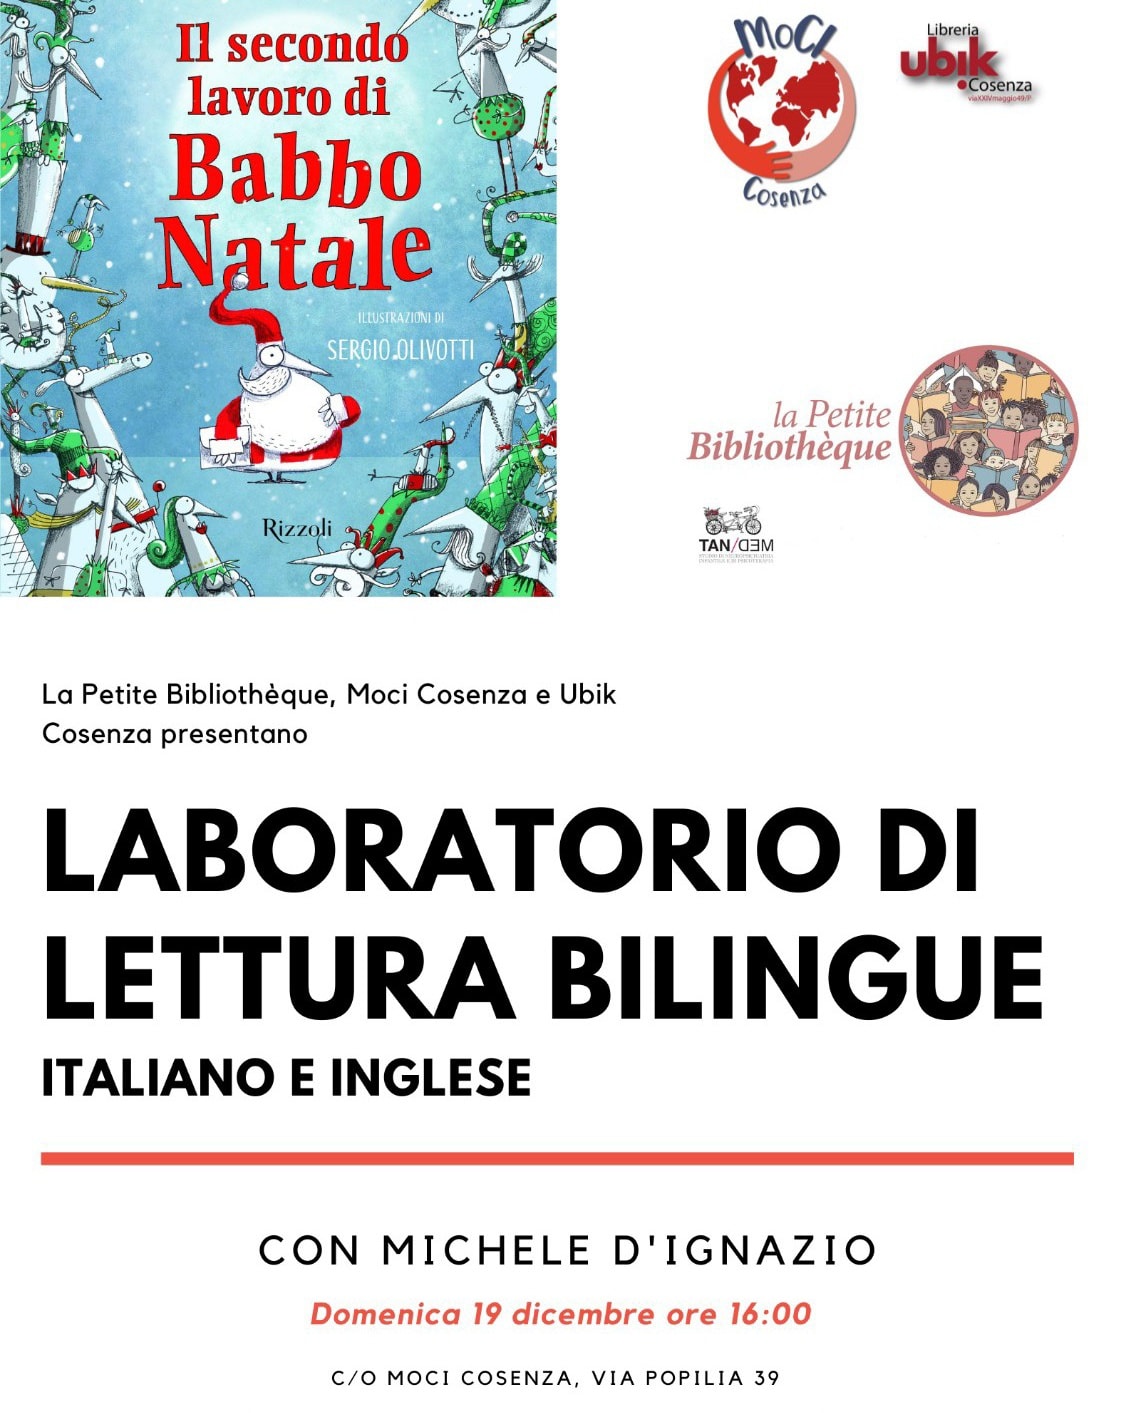 Il secondo lavoro di Babbo Natale - Laboratorio bilingue